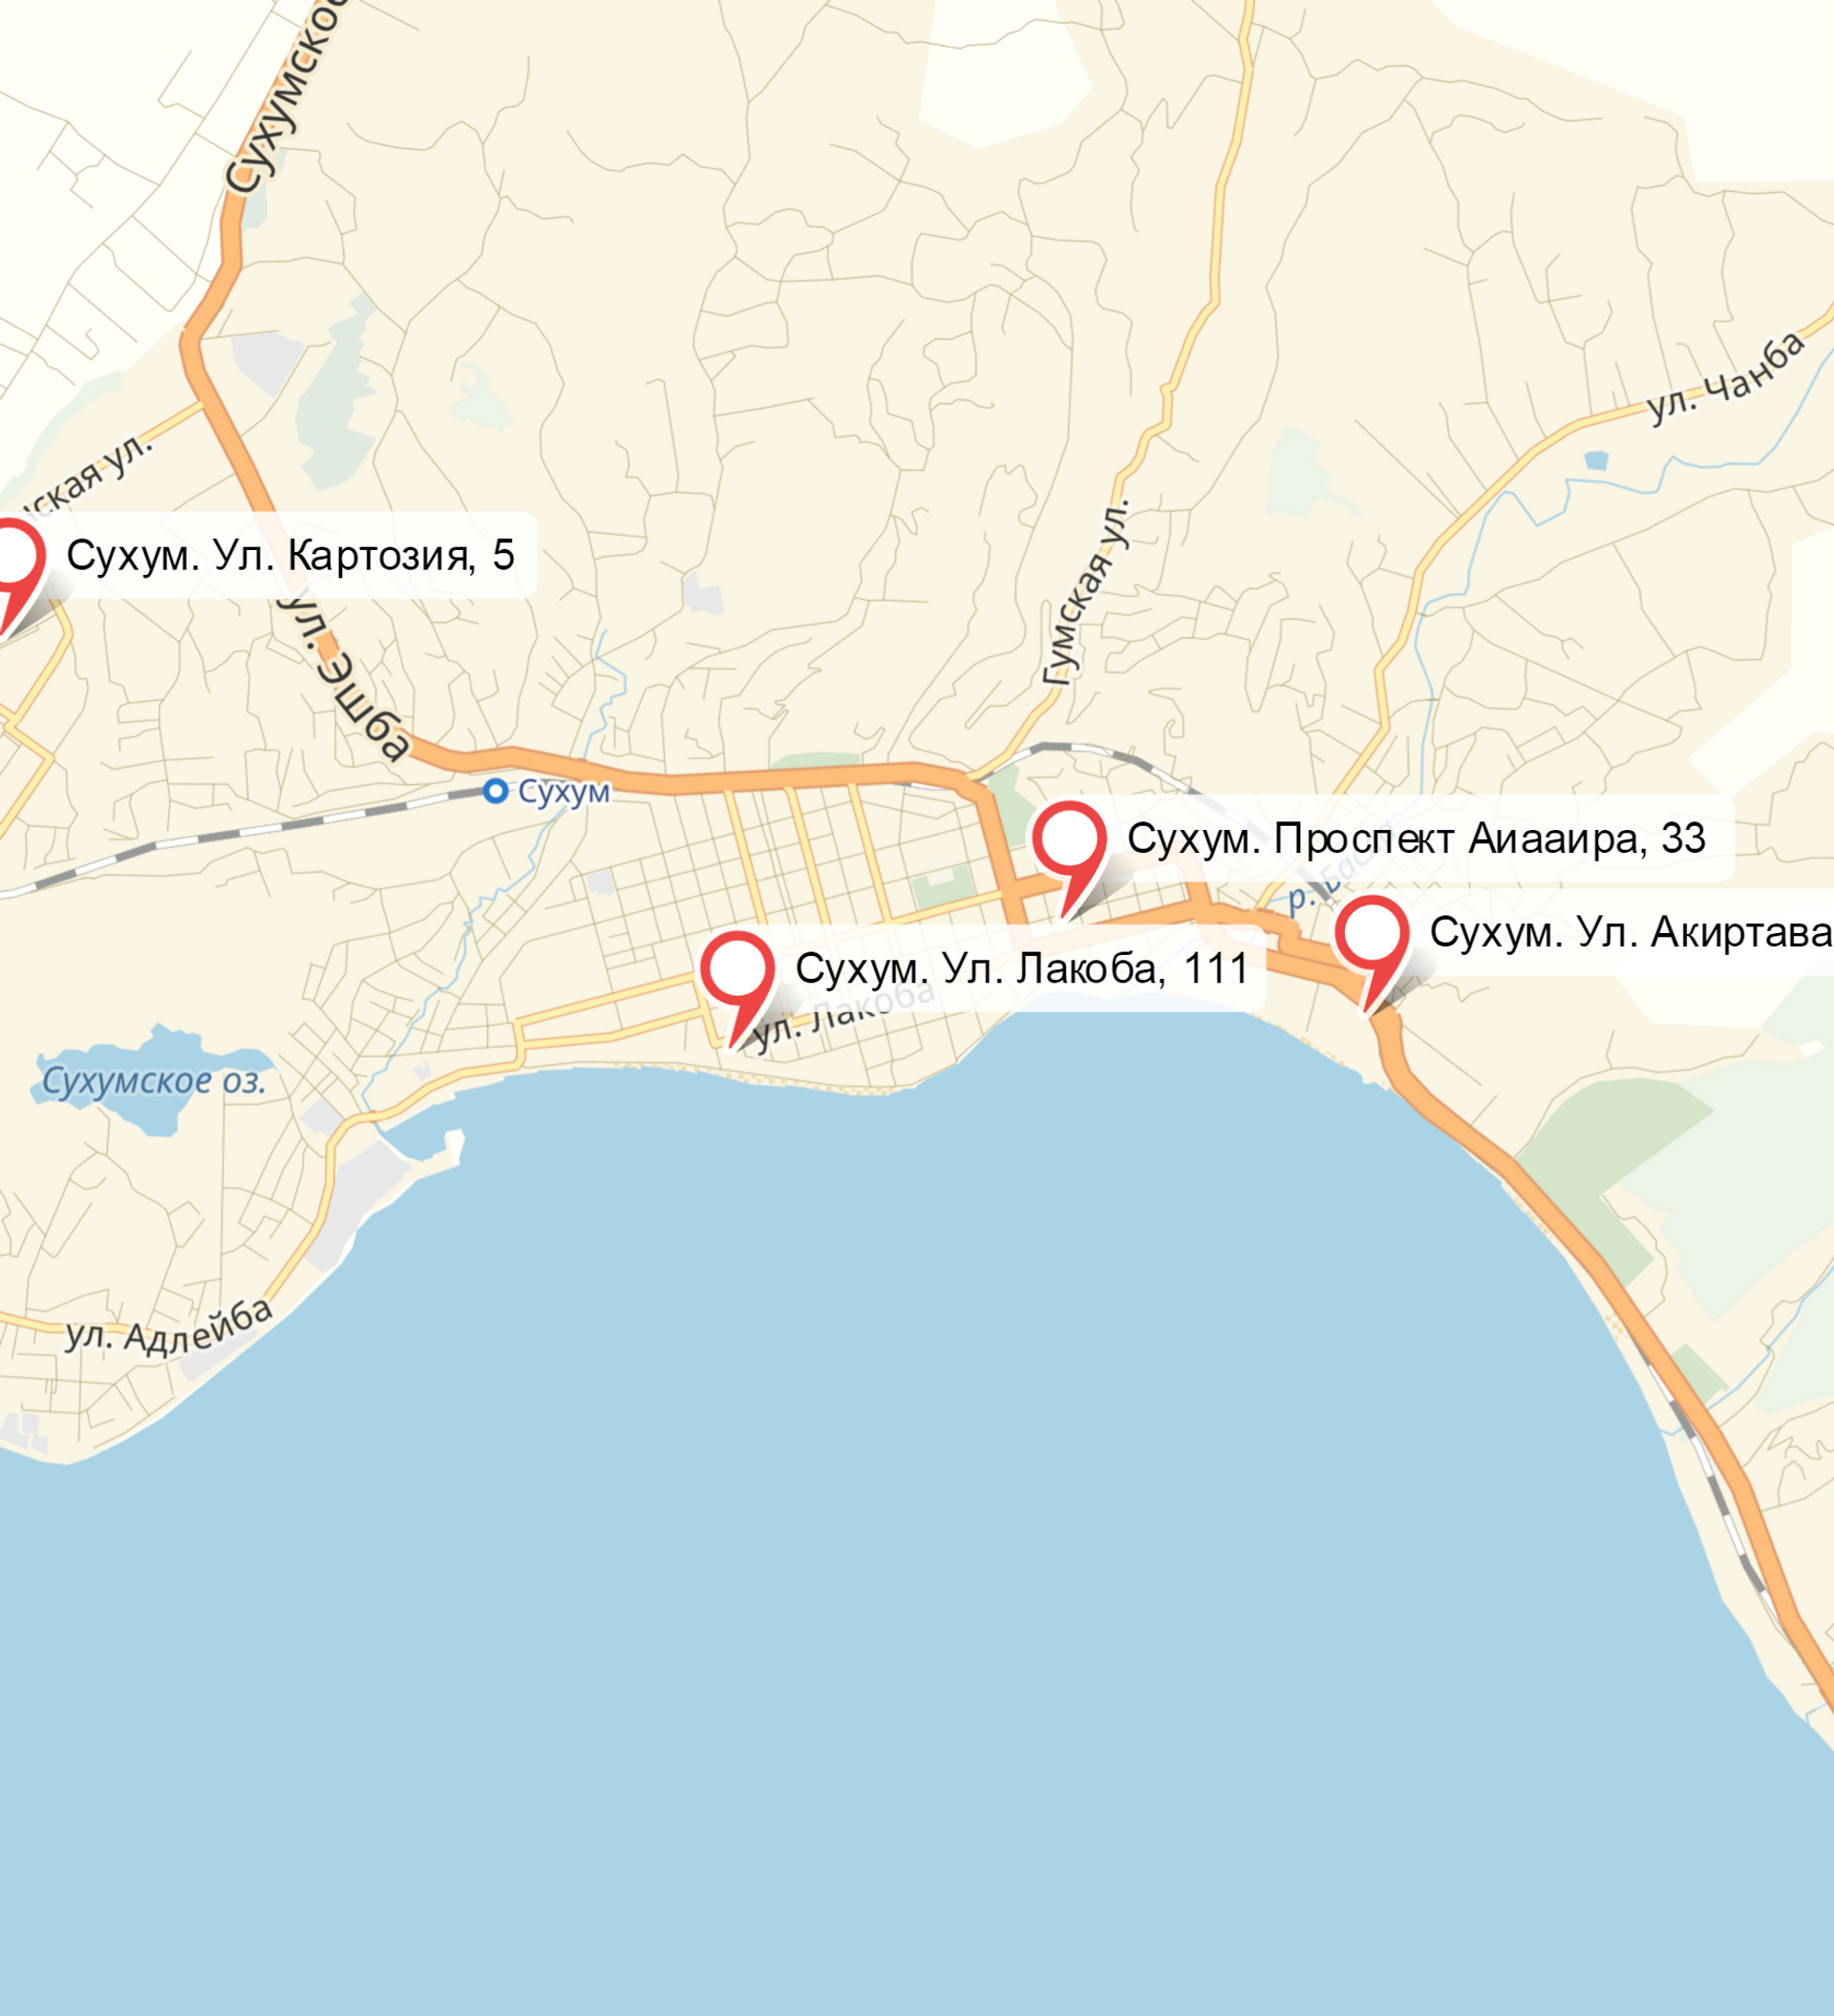 Сухум на карте Абхазии. Карта Сухум Абхазия с улицами. Сухуми карта побережья. Сухум карта города.